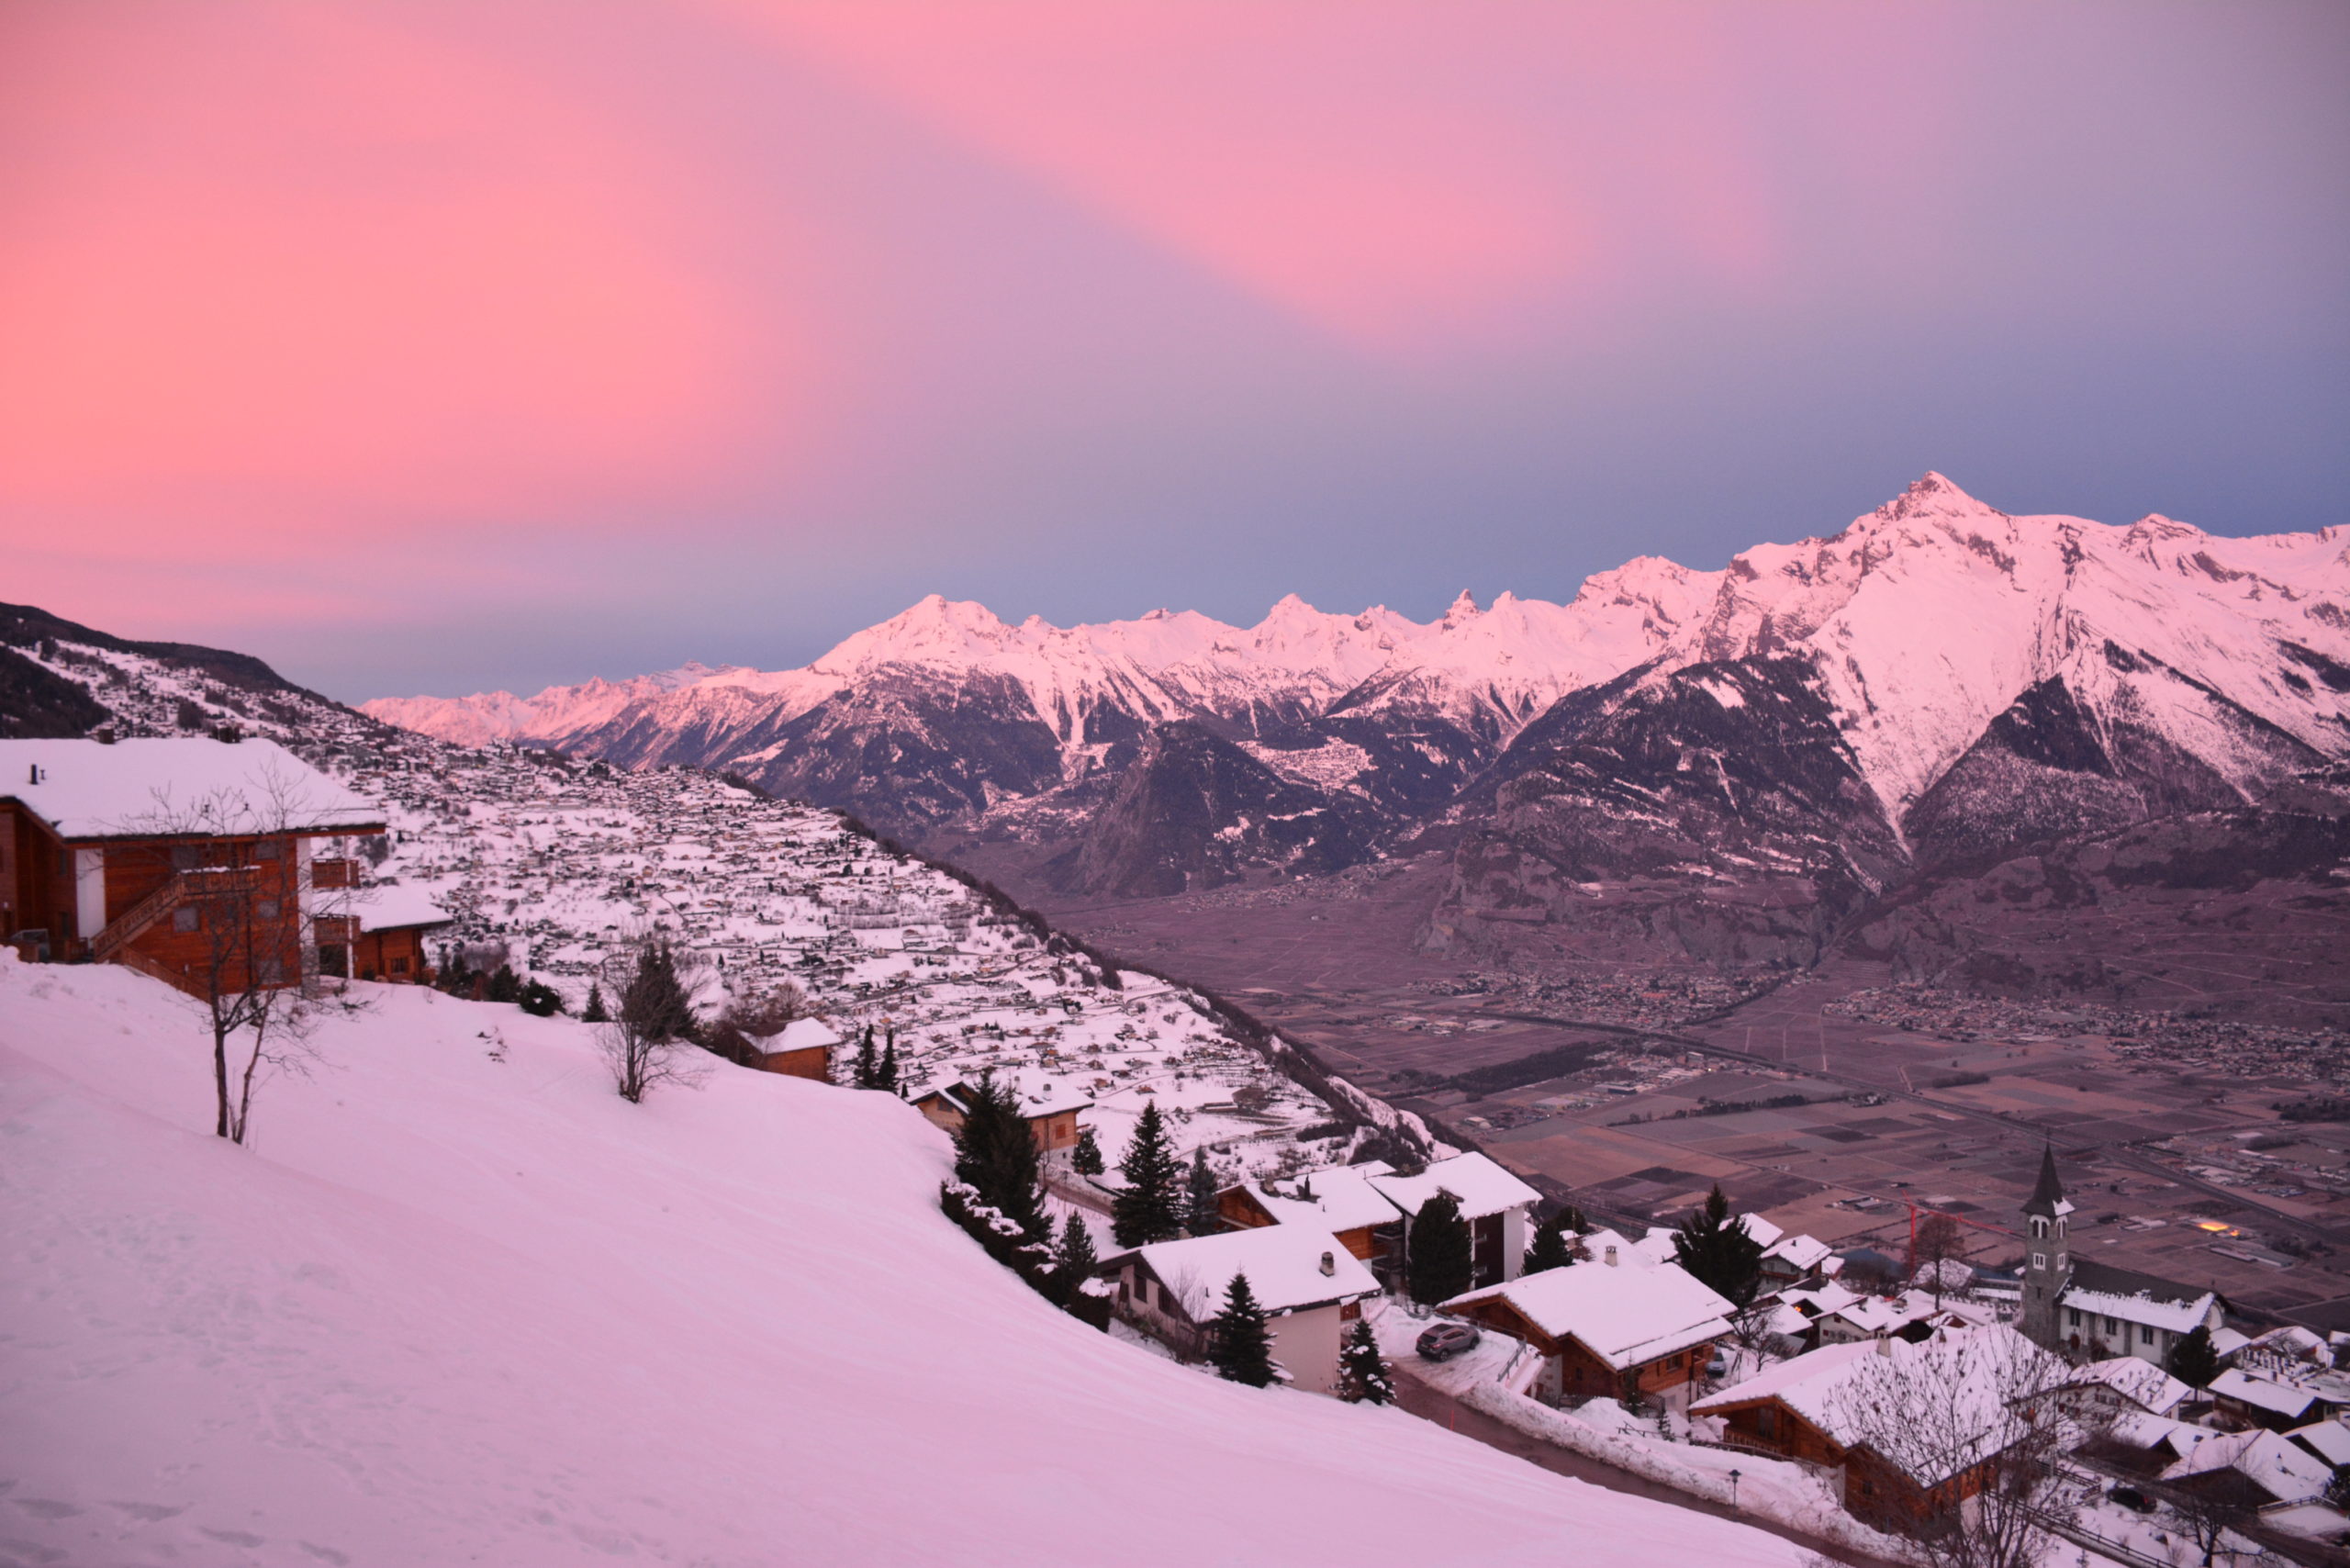 Ski to Verbier! Veysonnaz, Switzerland – Price: $900,000